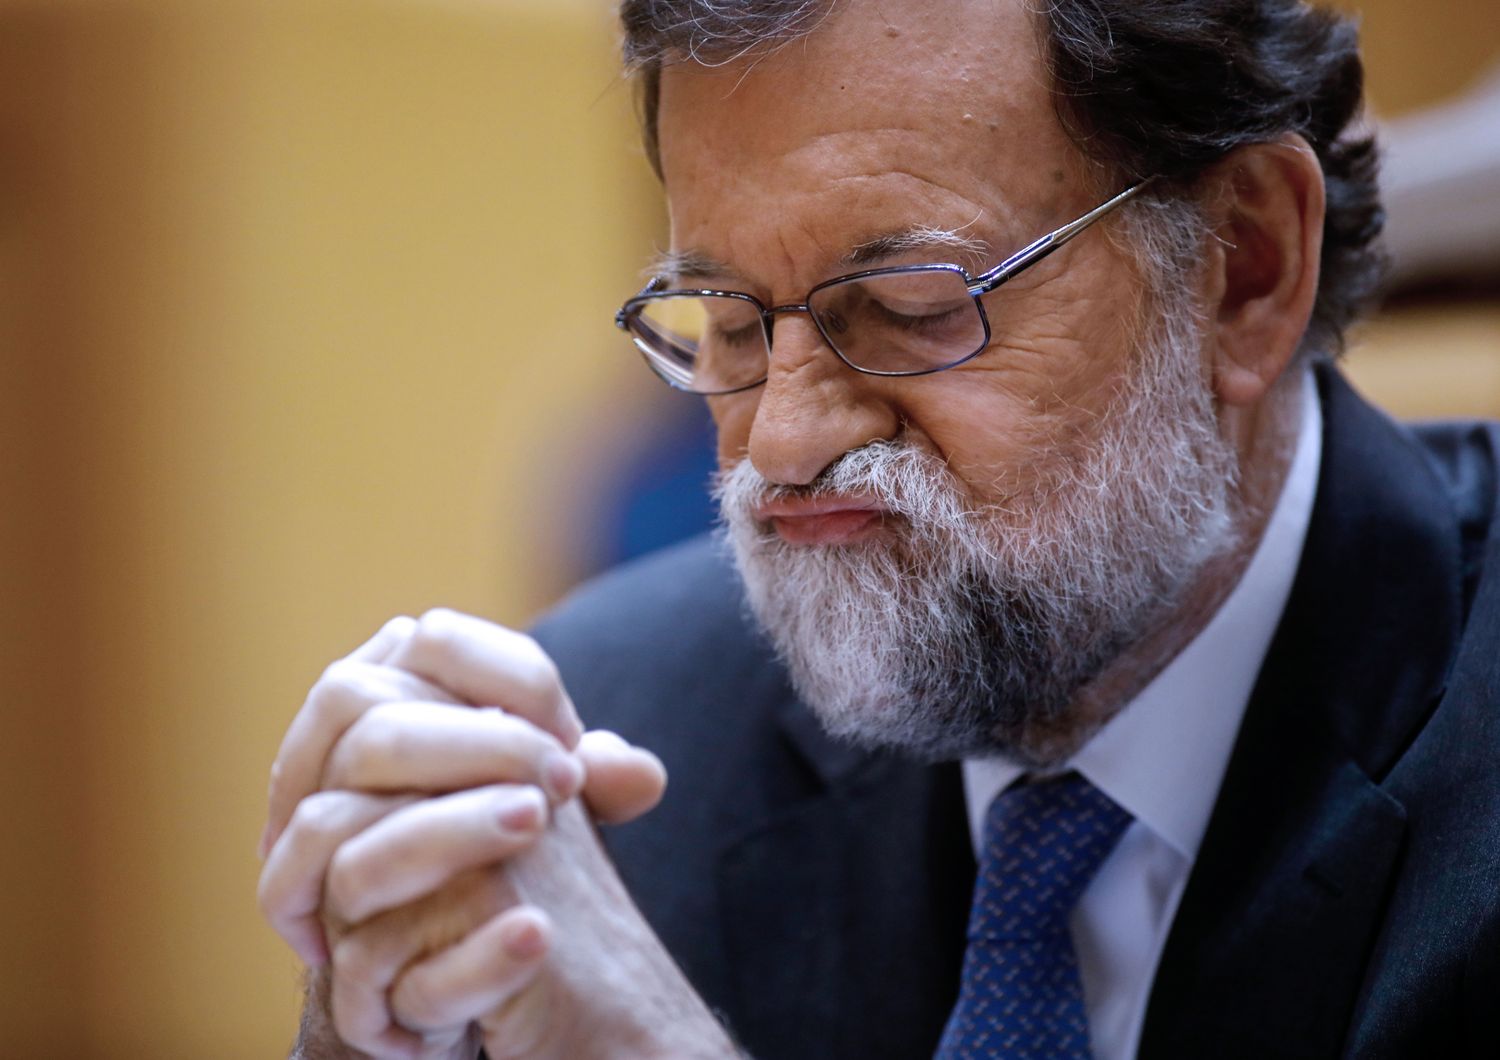 &nbsp;Mariano Rajoy